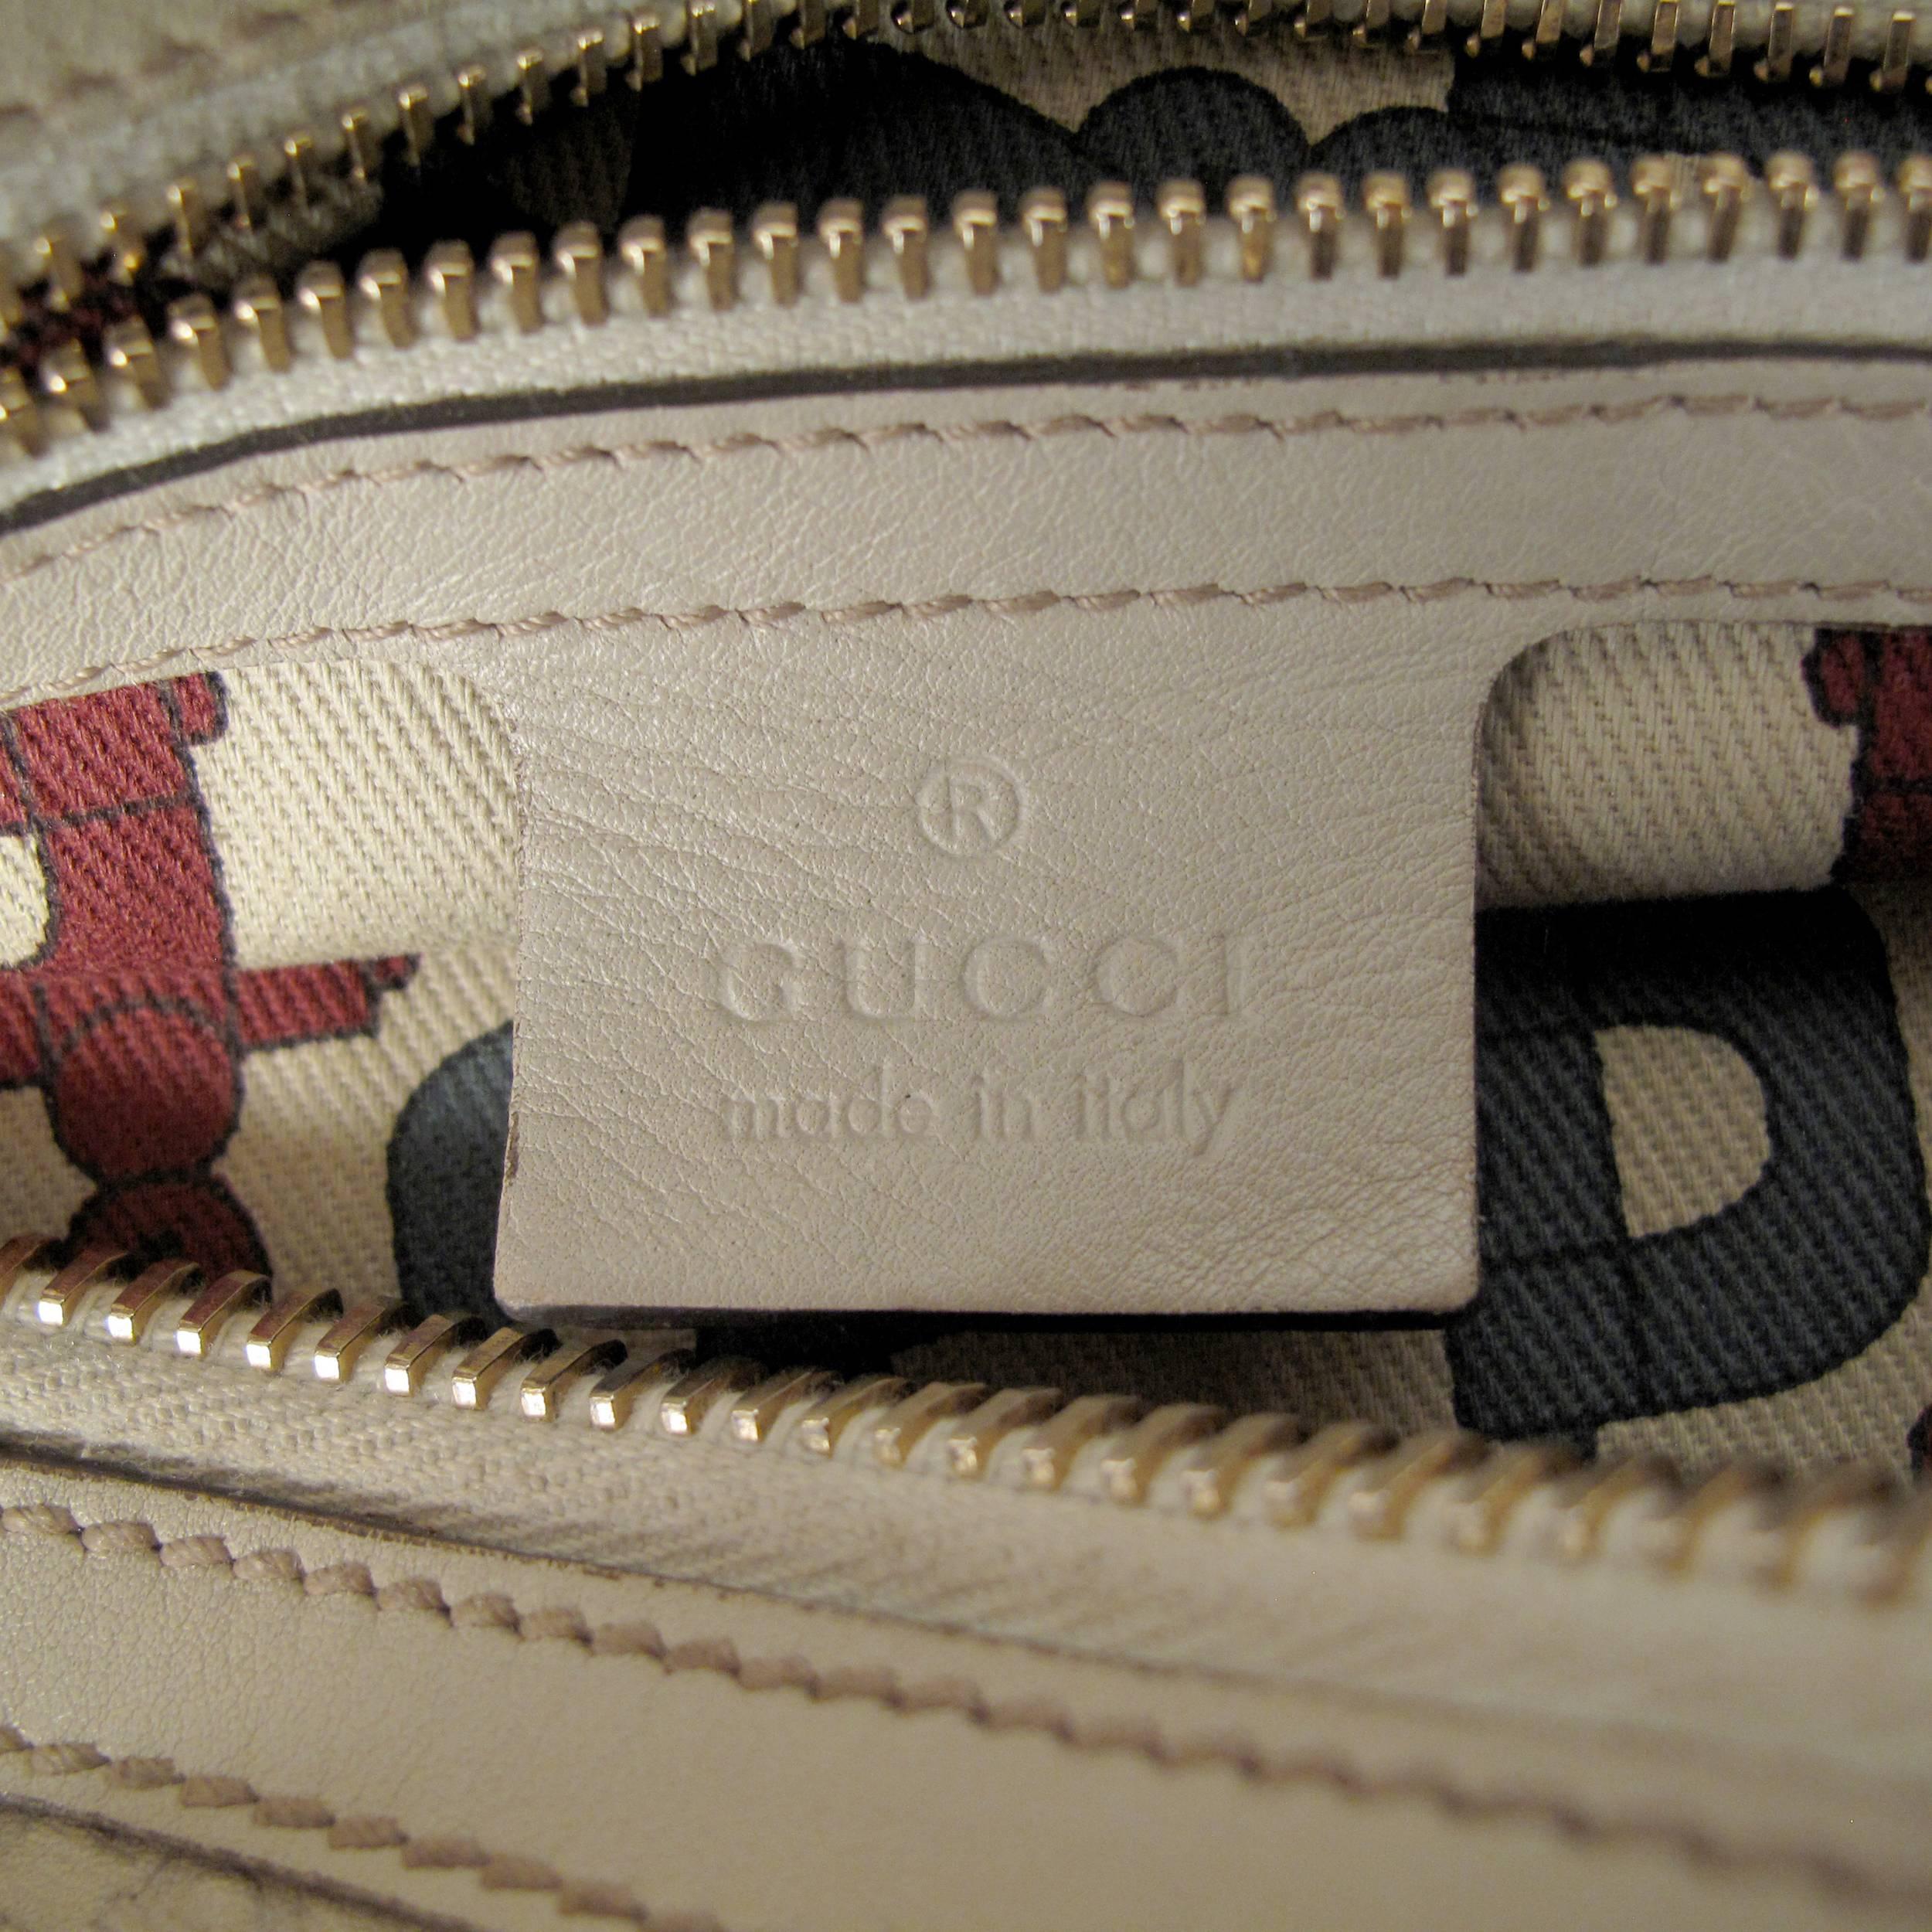 Gucci Bamboo Leather Monogram Shoulder Bag - Tan Beige GG Gold Satchel Handbag 4